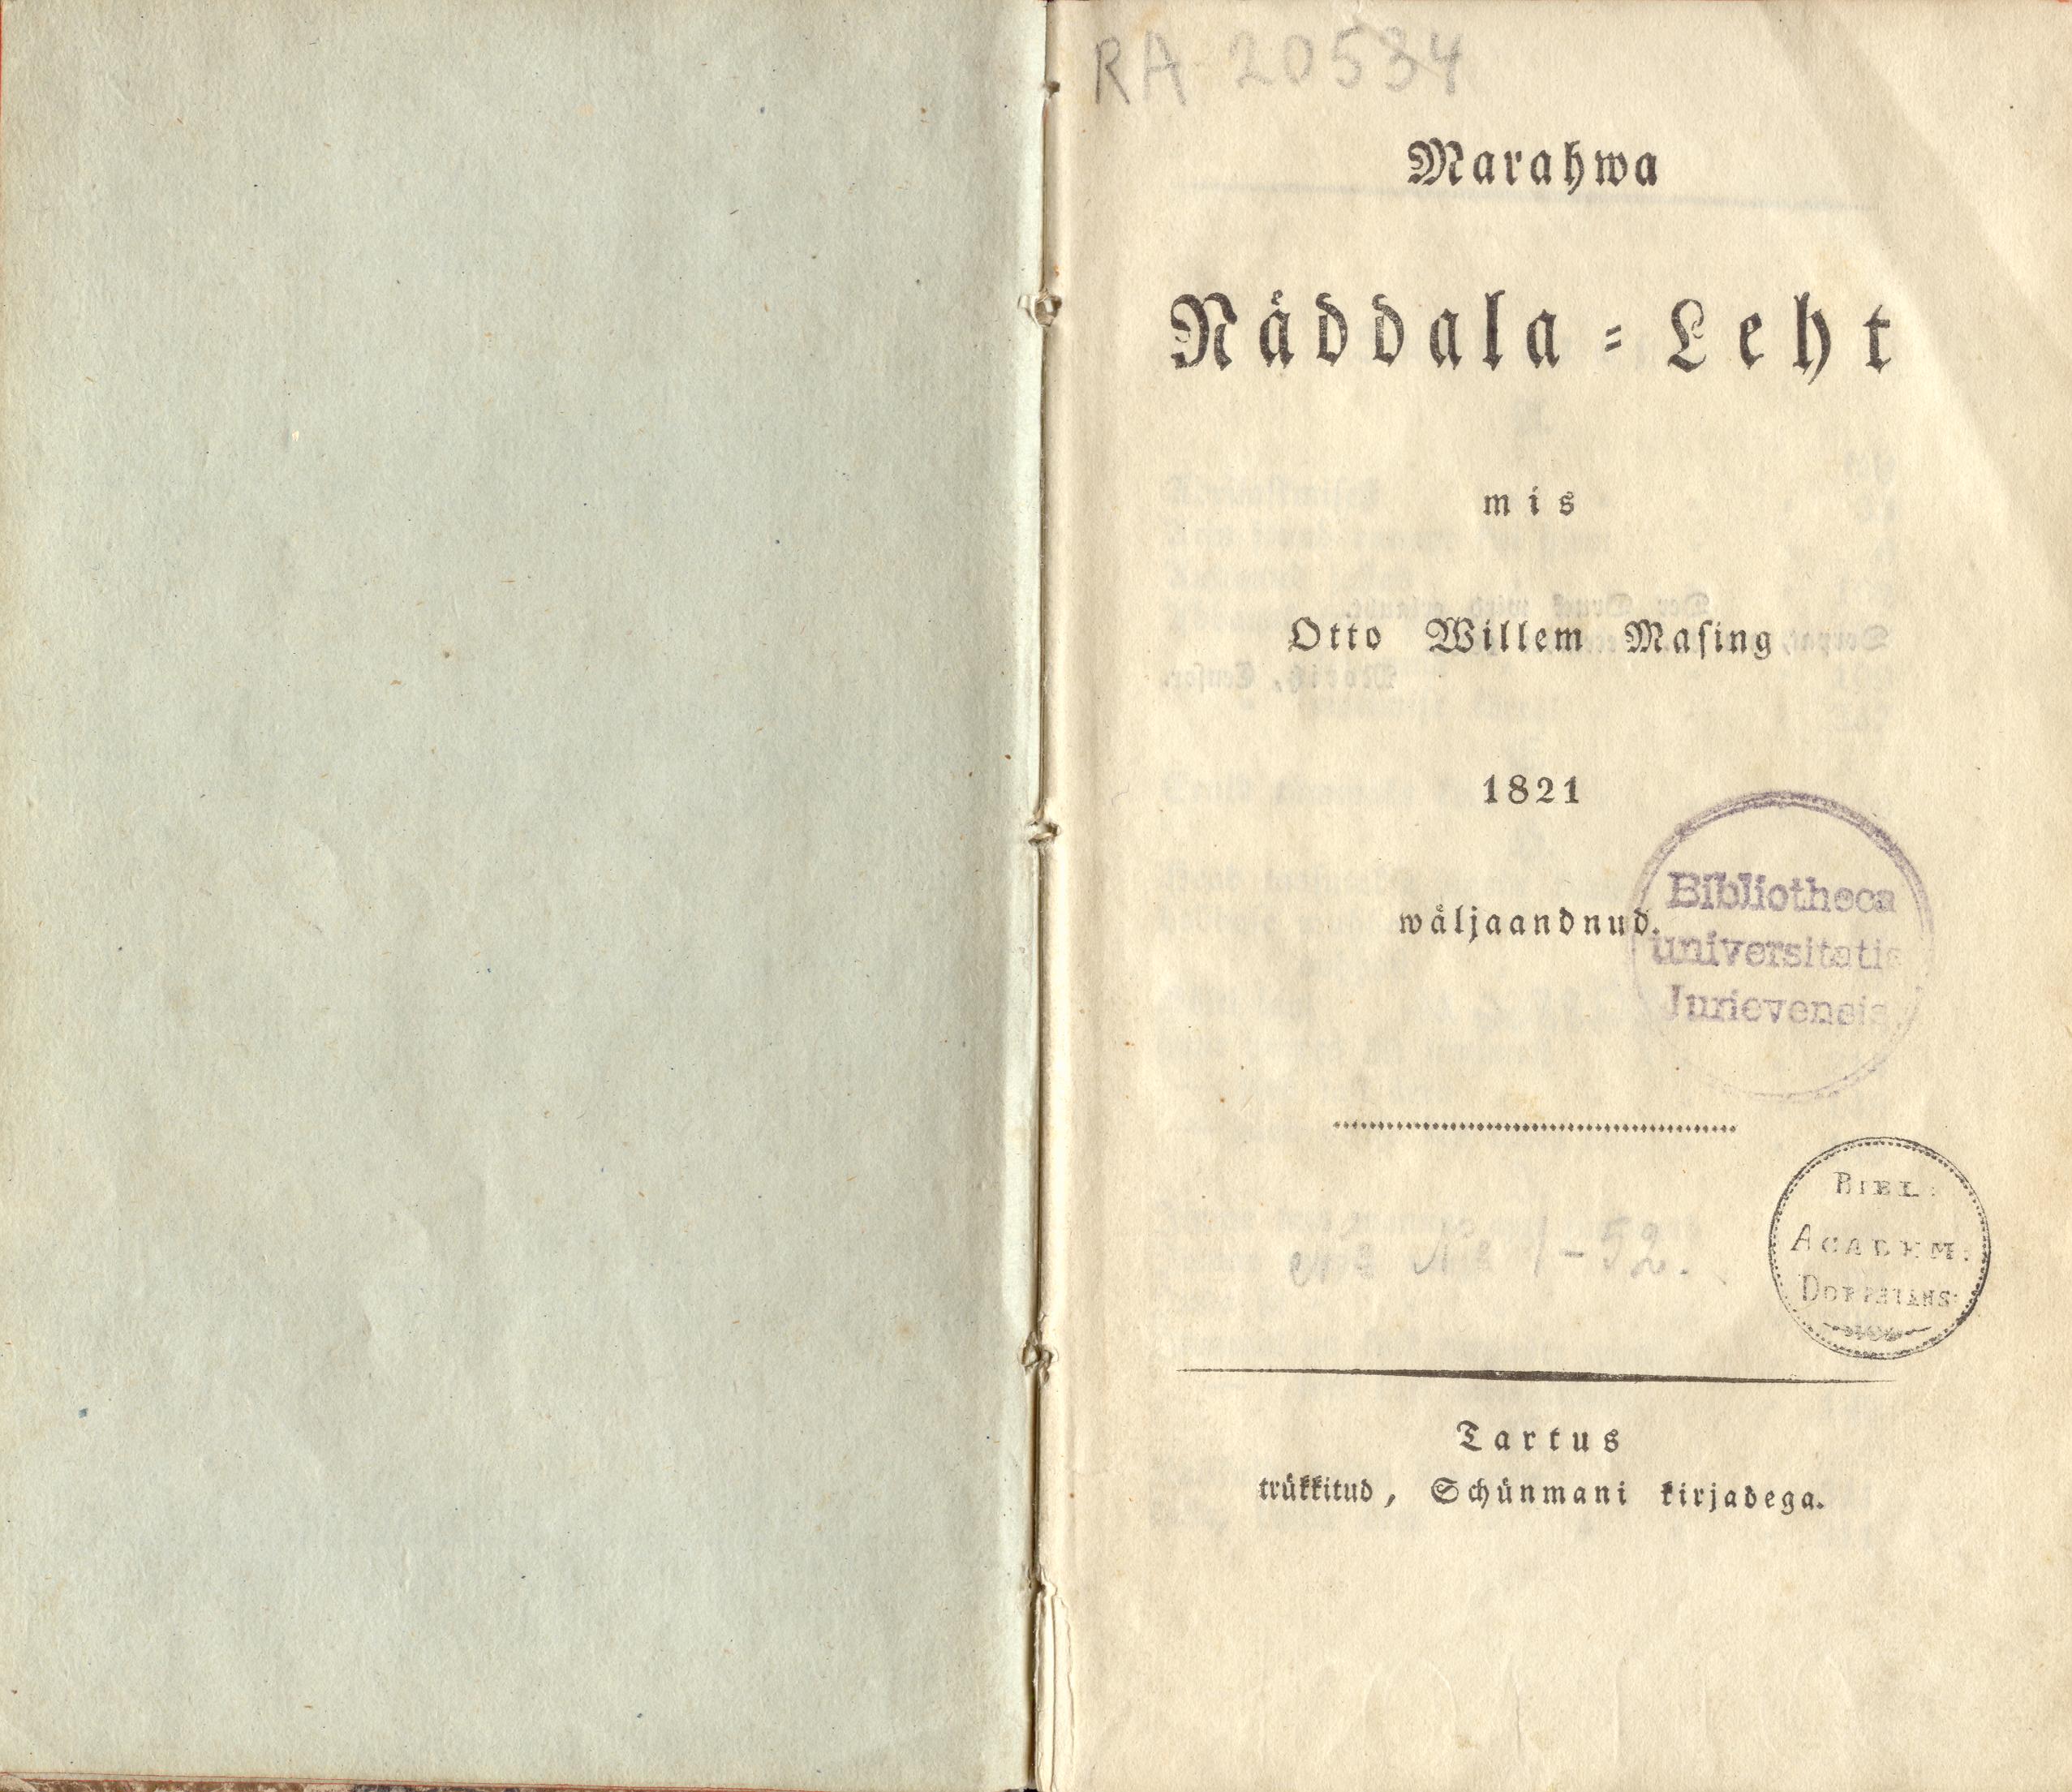 Marahwa Näddala-Leht (1821) | 1. Title page